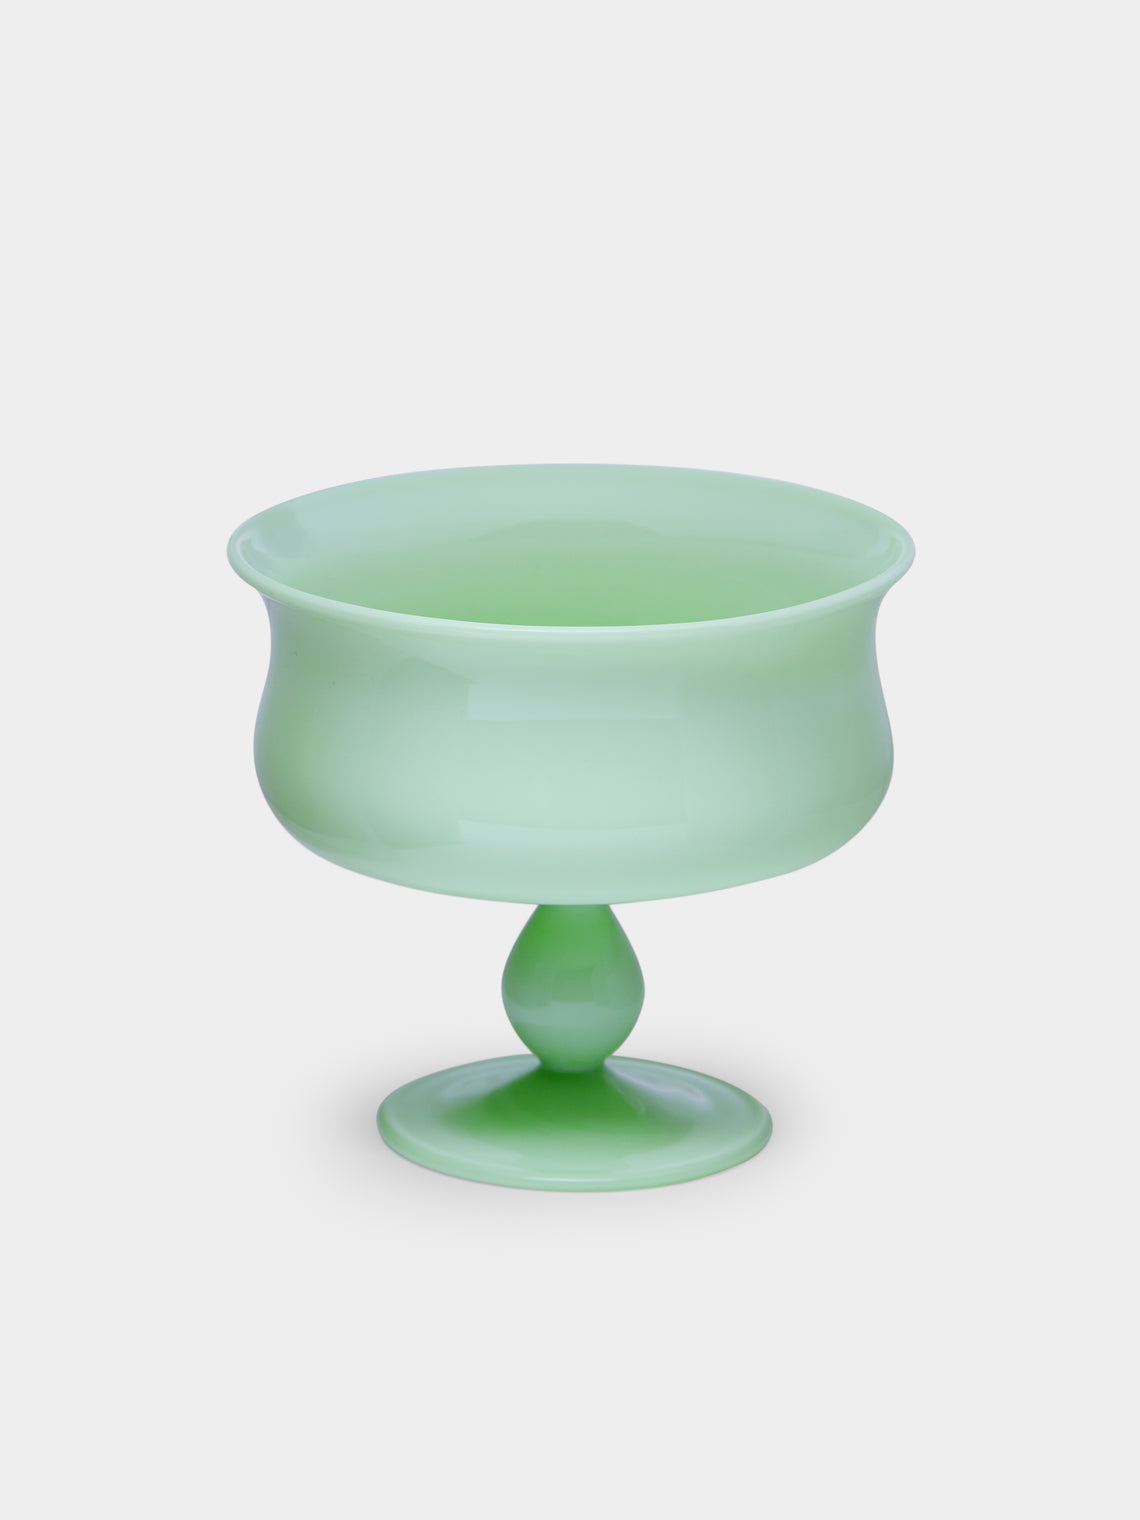 Yali Glass - Hand-Blown Murano Glass Ice Cream Sundae Serving Bowl -  - ABASK - 